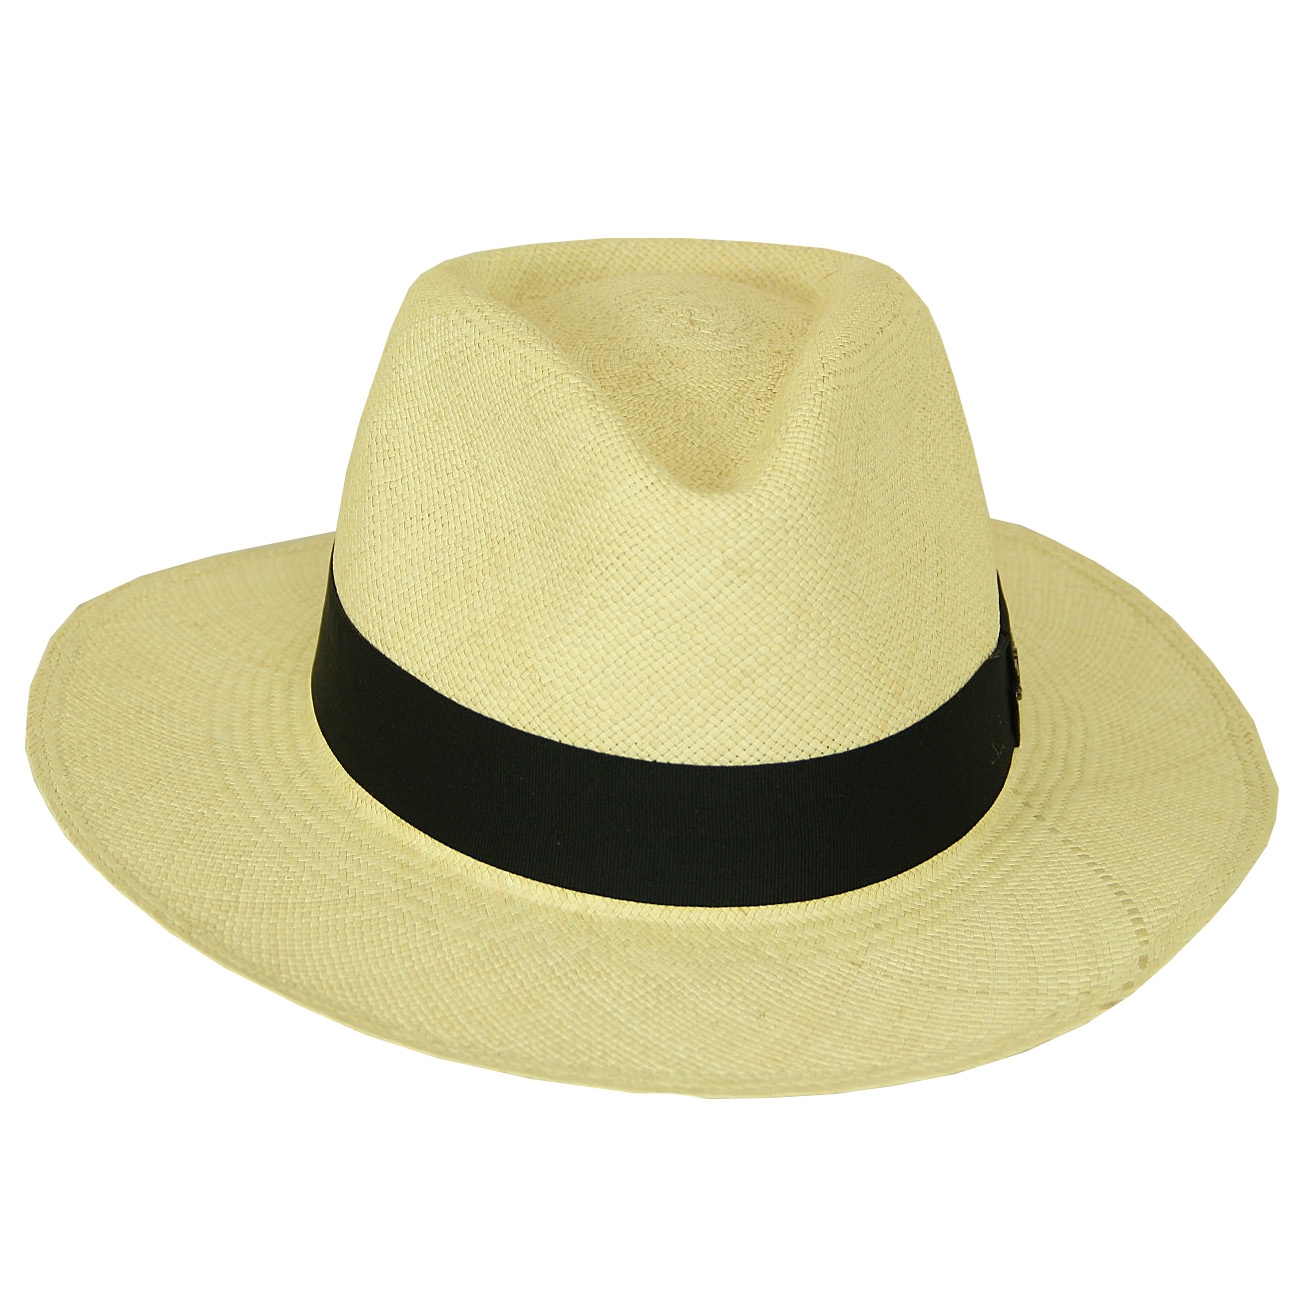 Slecht stijl Fascineren Een originele en betaalbare Panama hoed, handgemaakt in Equador.